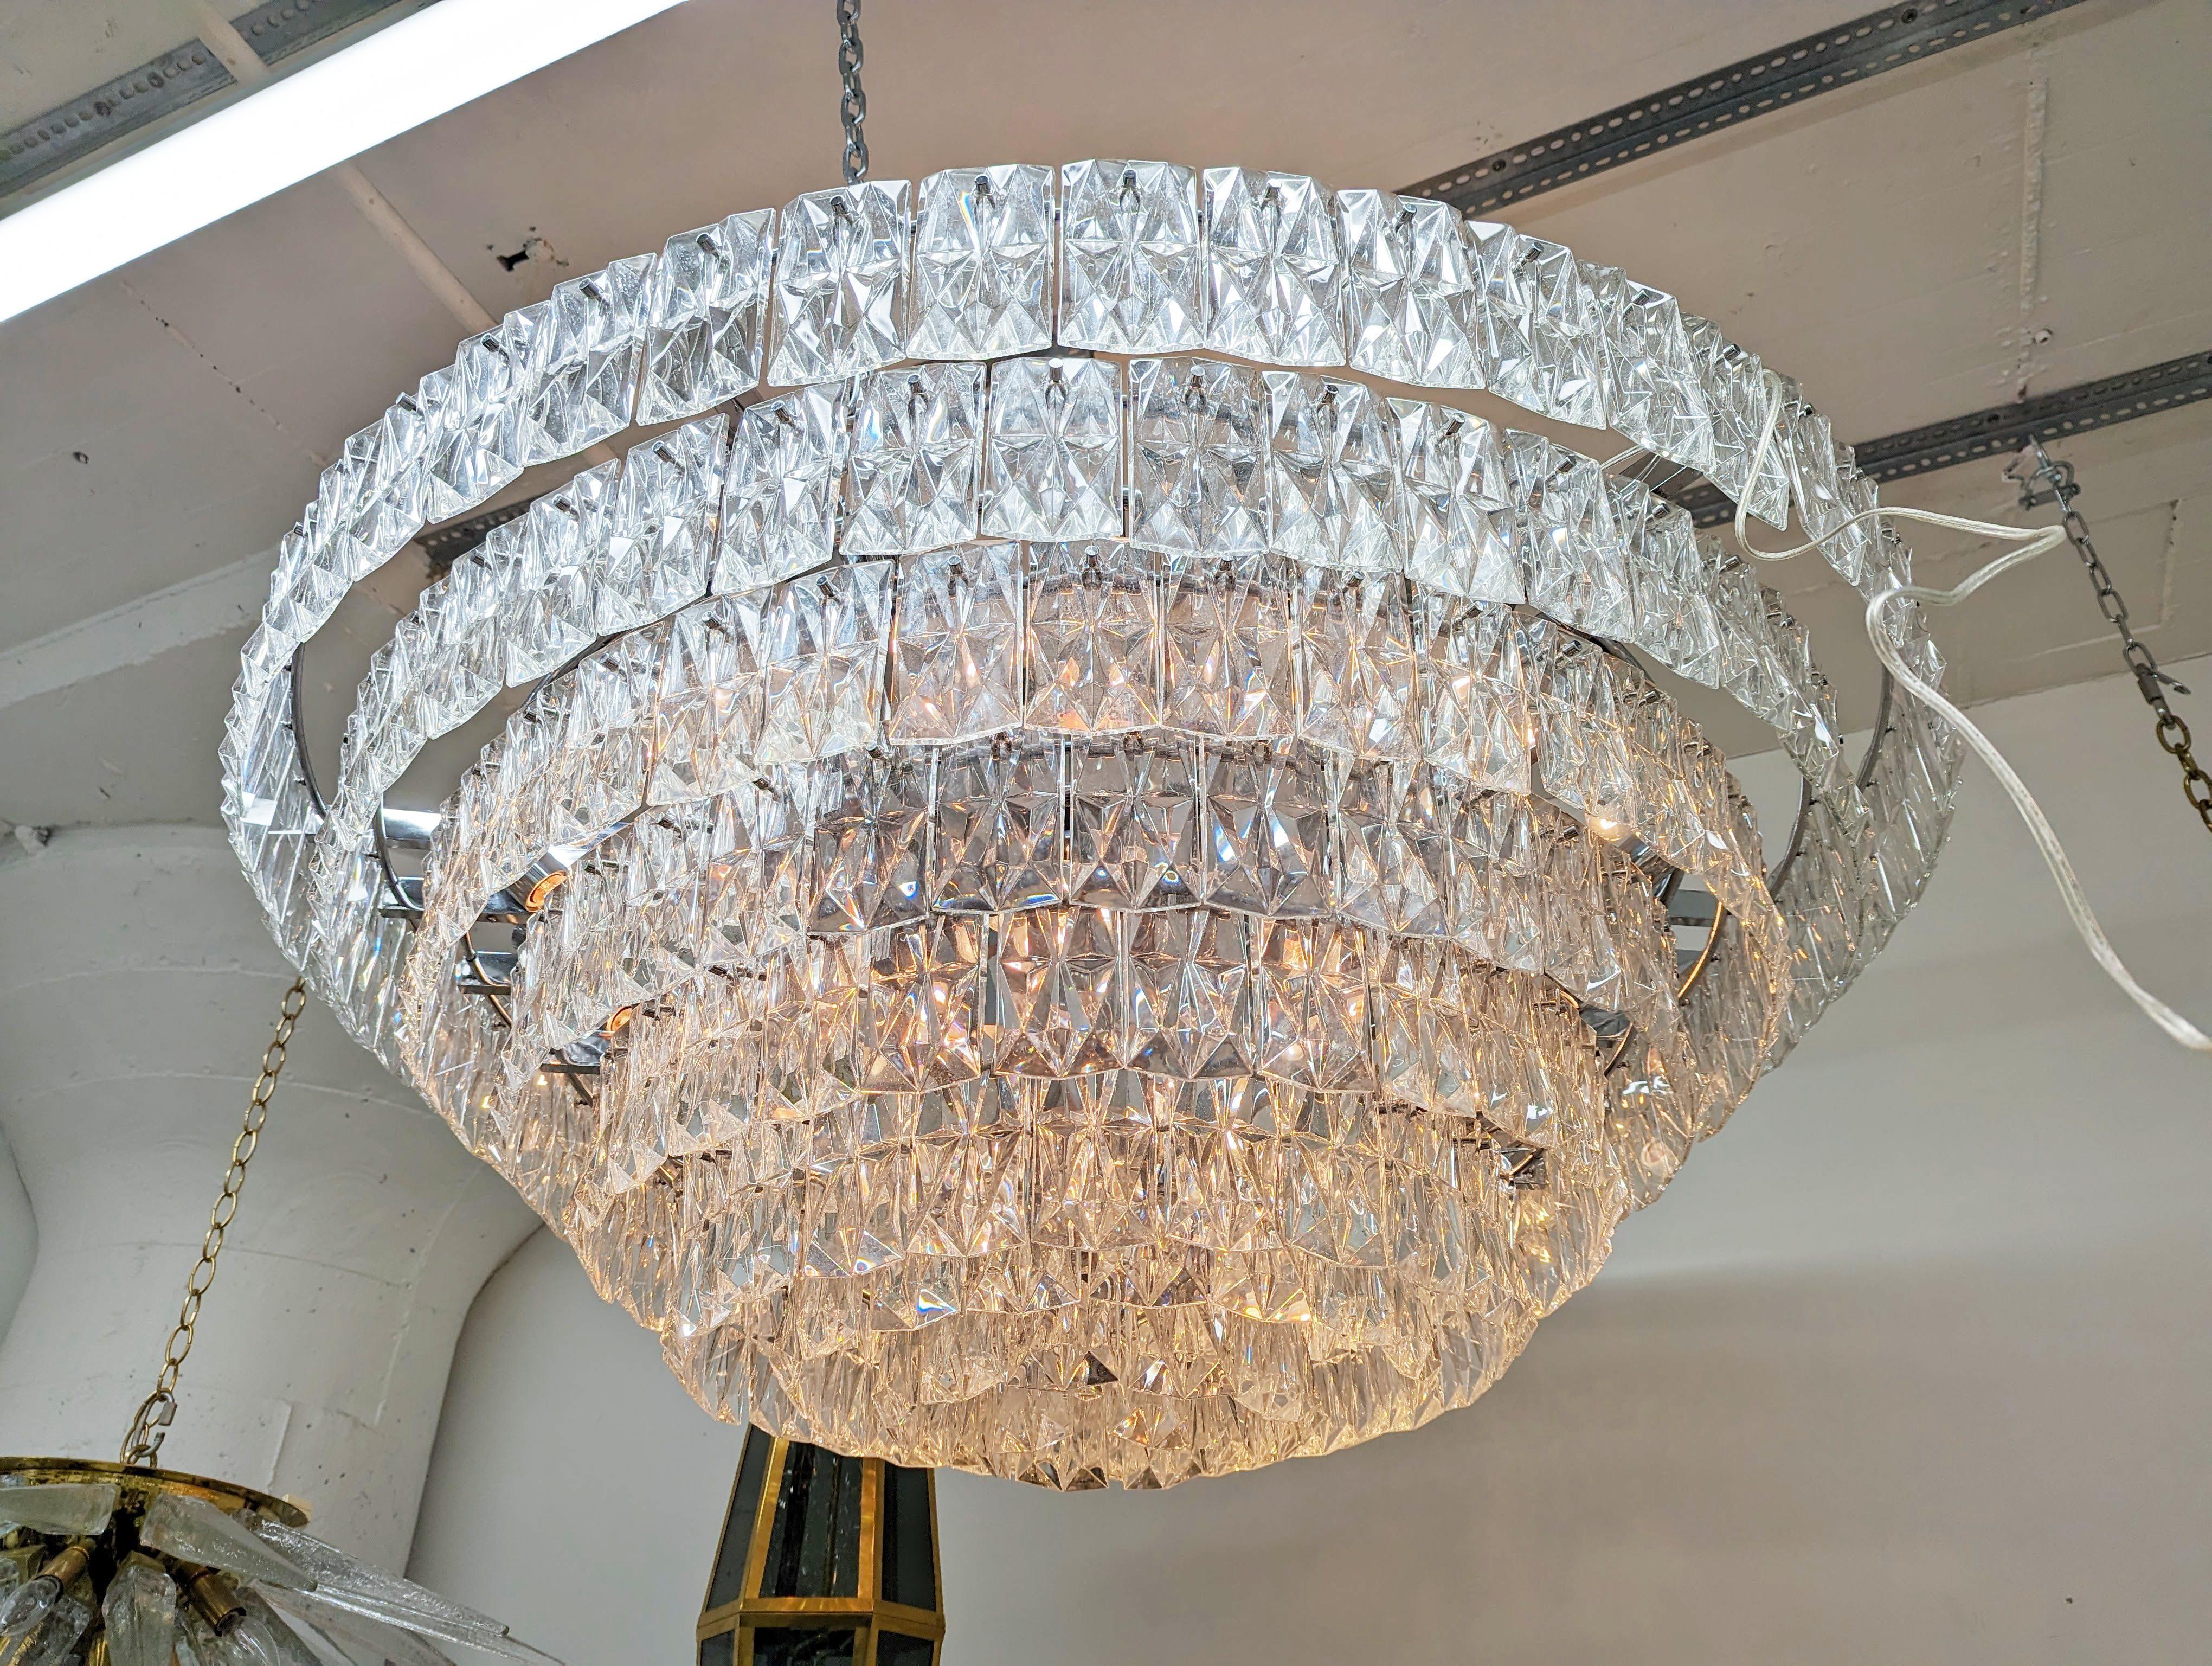 Monumental tiered crystal drop chandelier by Kinkeldey.

Creator: Kinkeldey

Origin: Germany

Circa: 1970s

Dimensions: 30